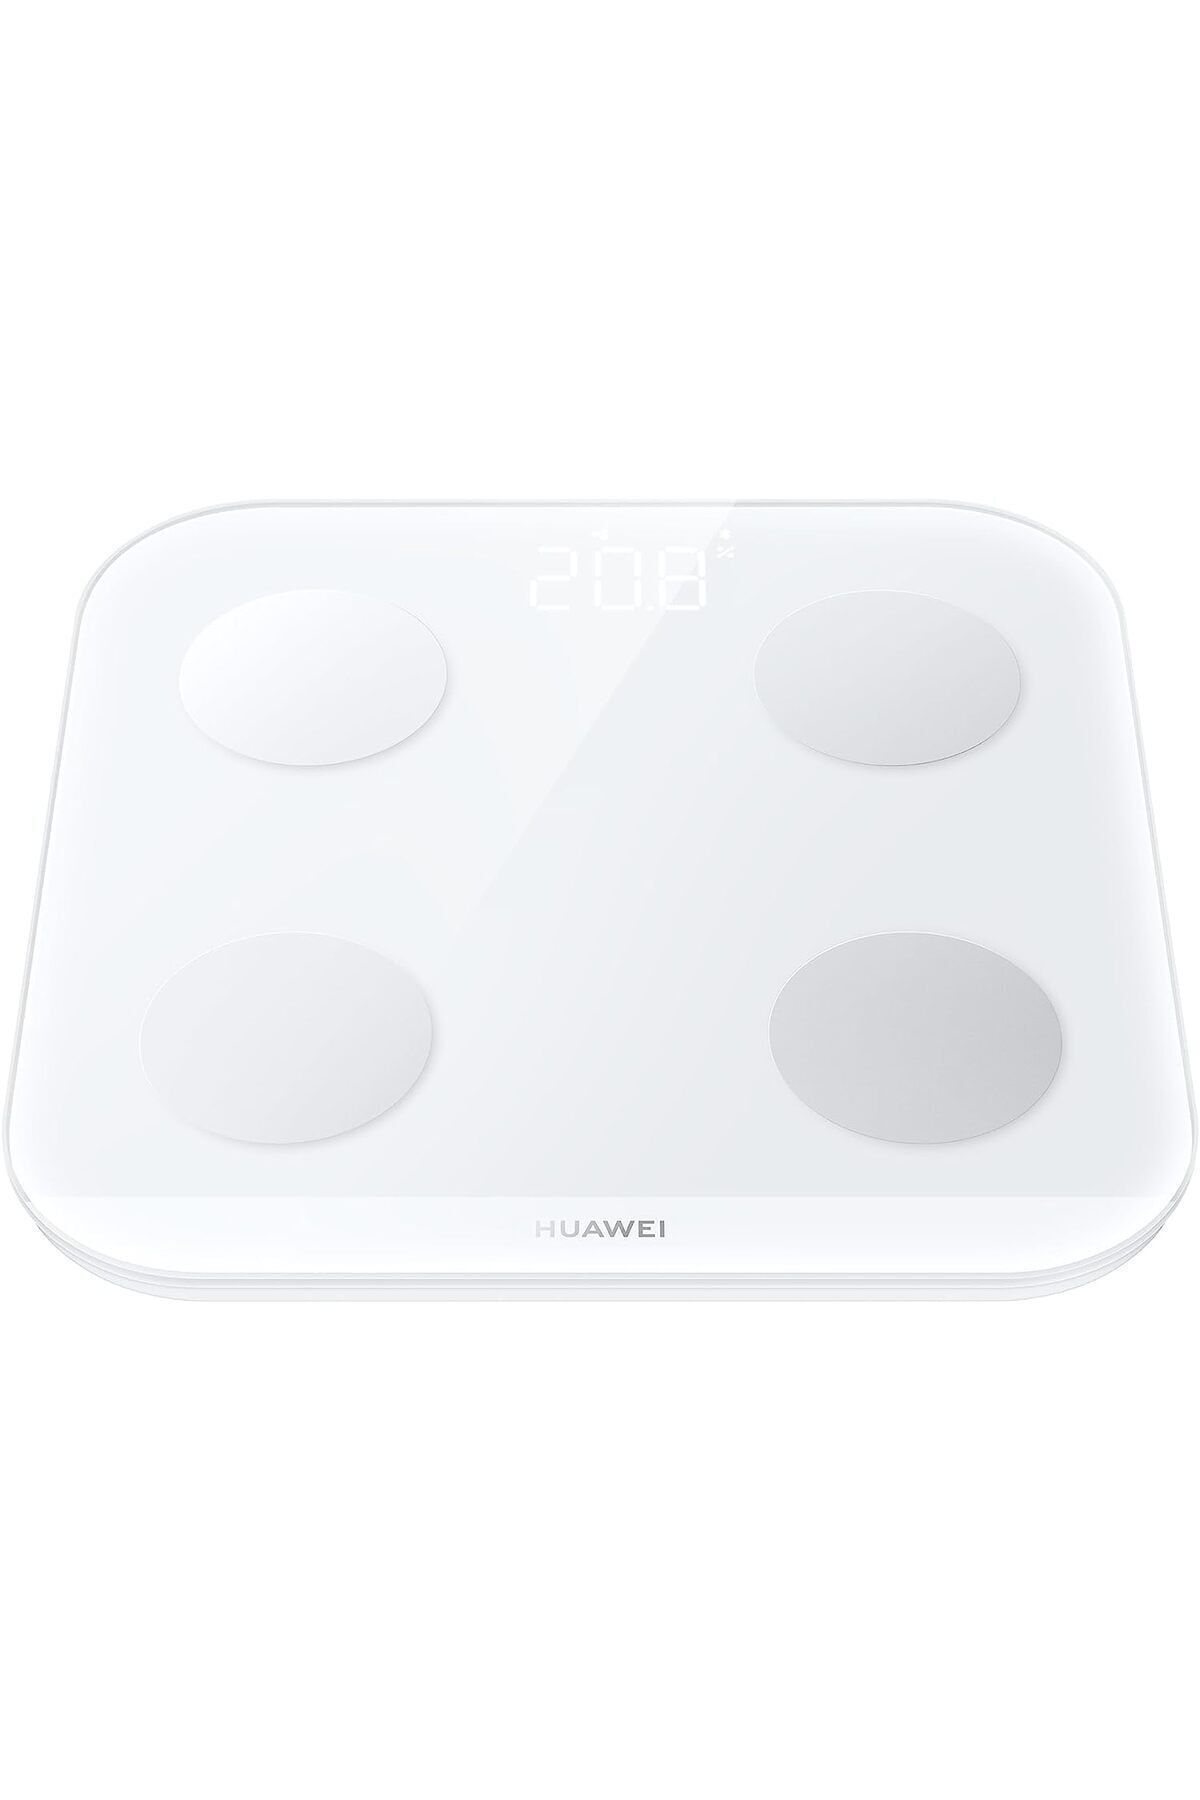 Huawei Scale 3 Akıllı Tartı - Beyaz